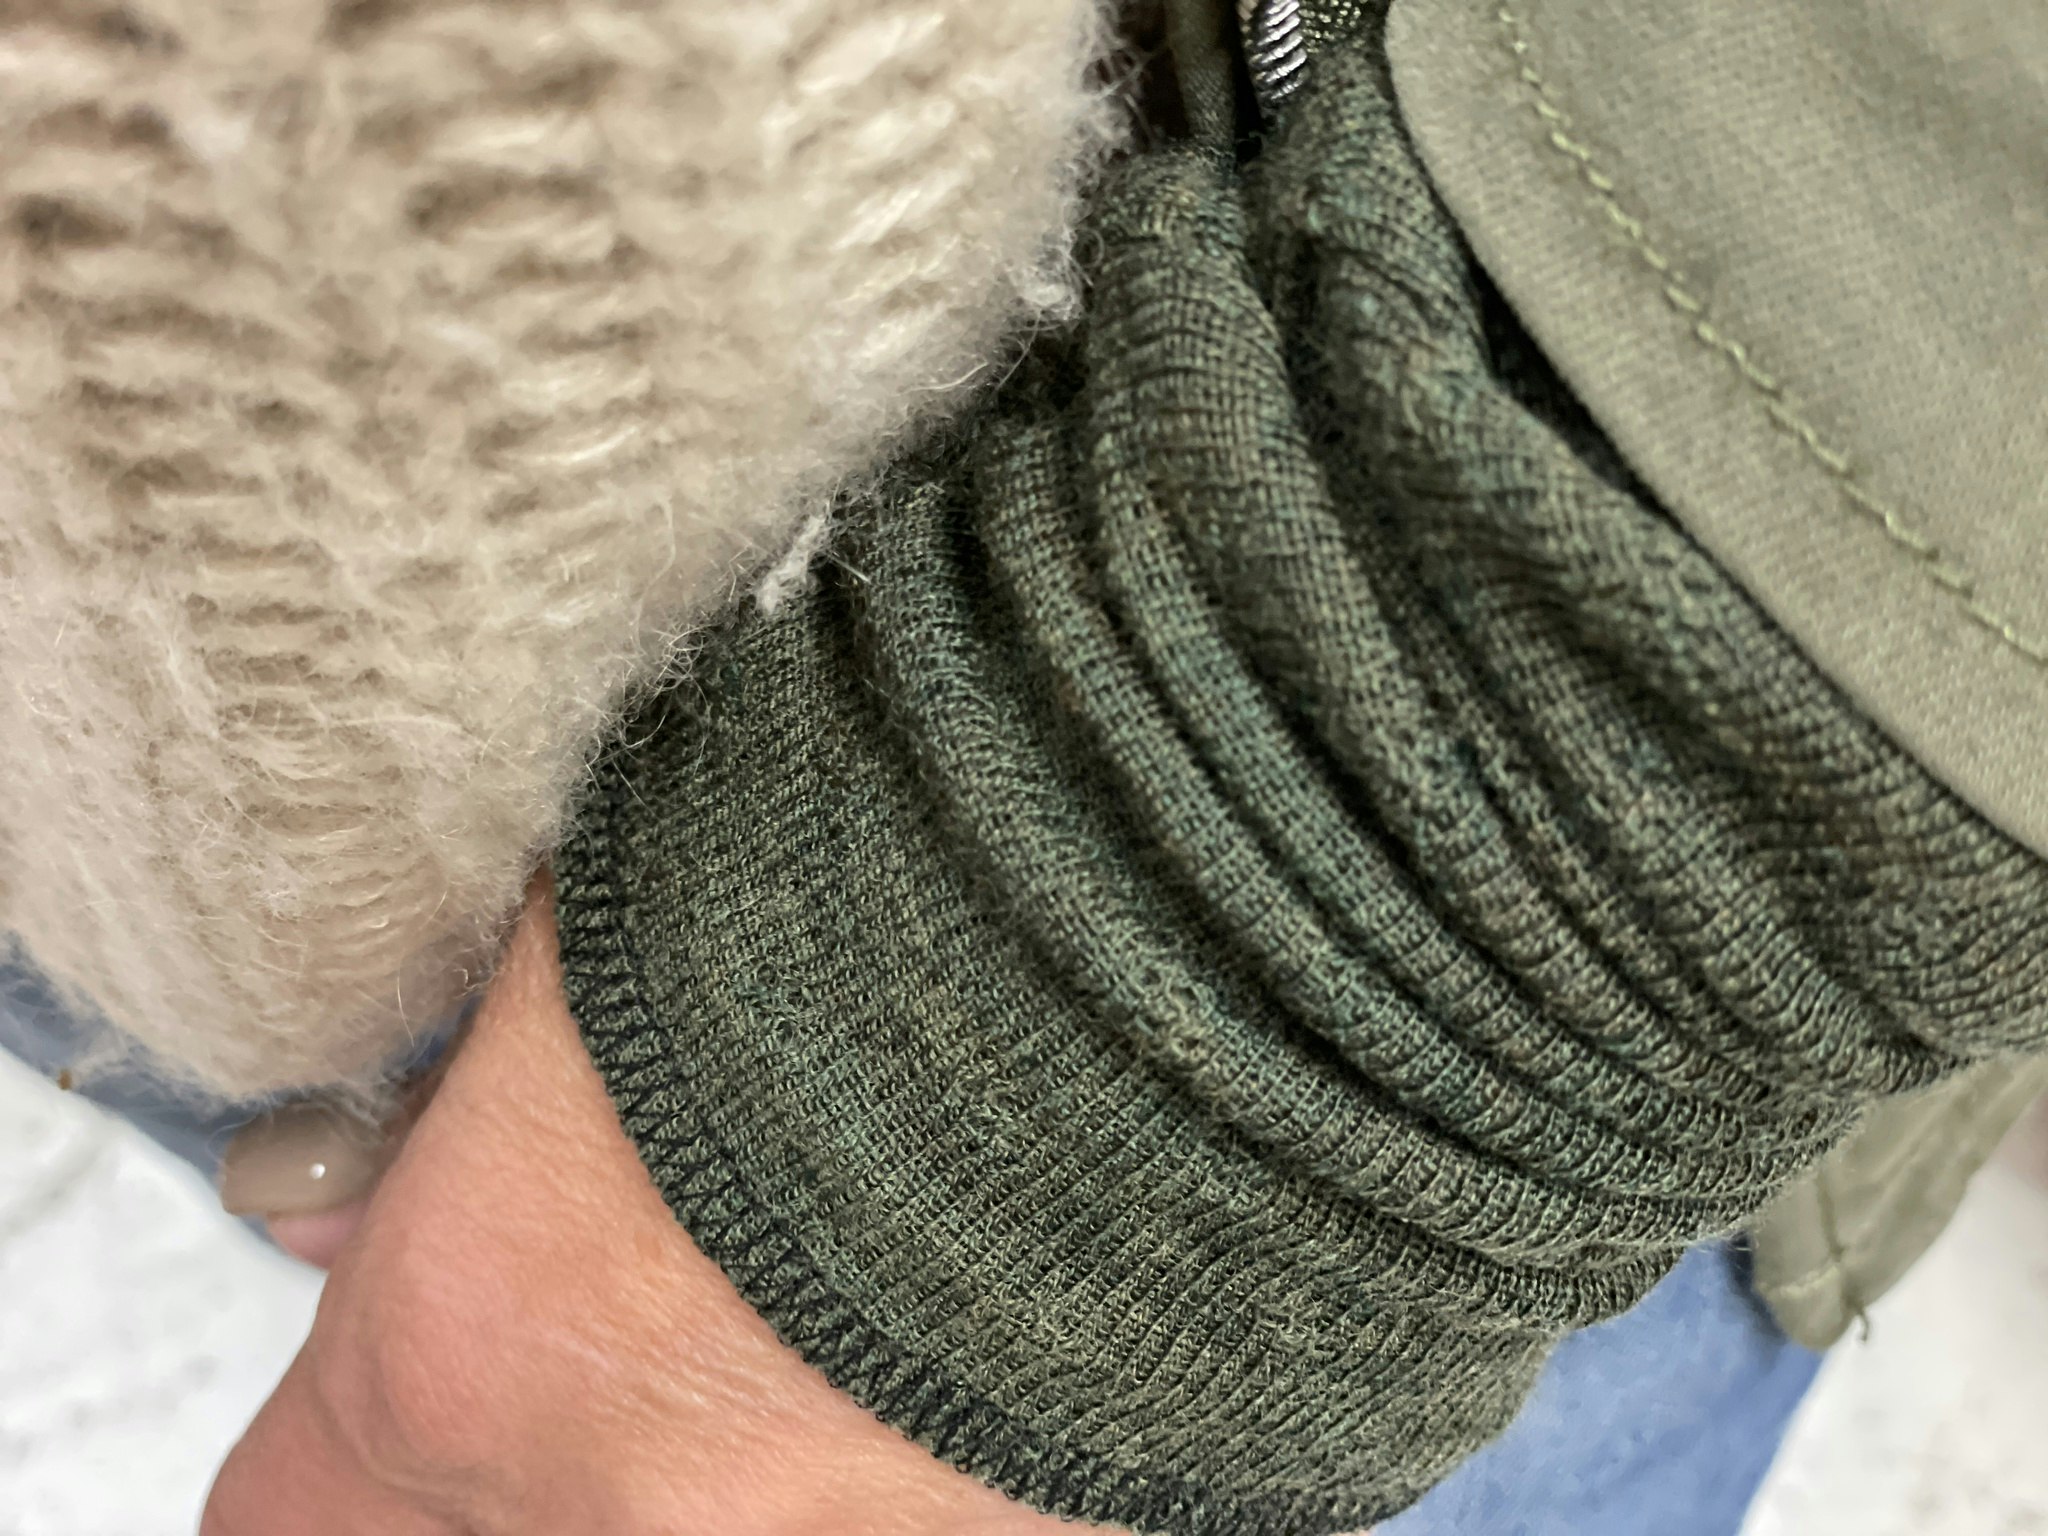 Wrist warmers 100% merino wool